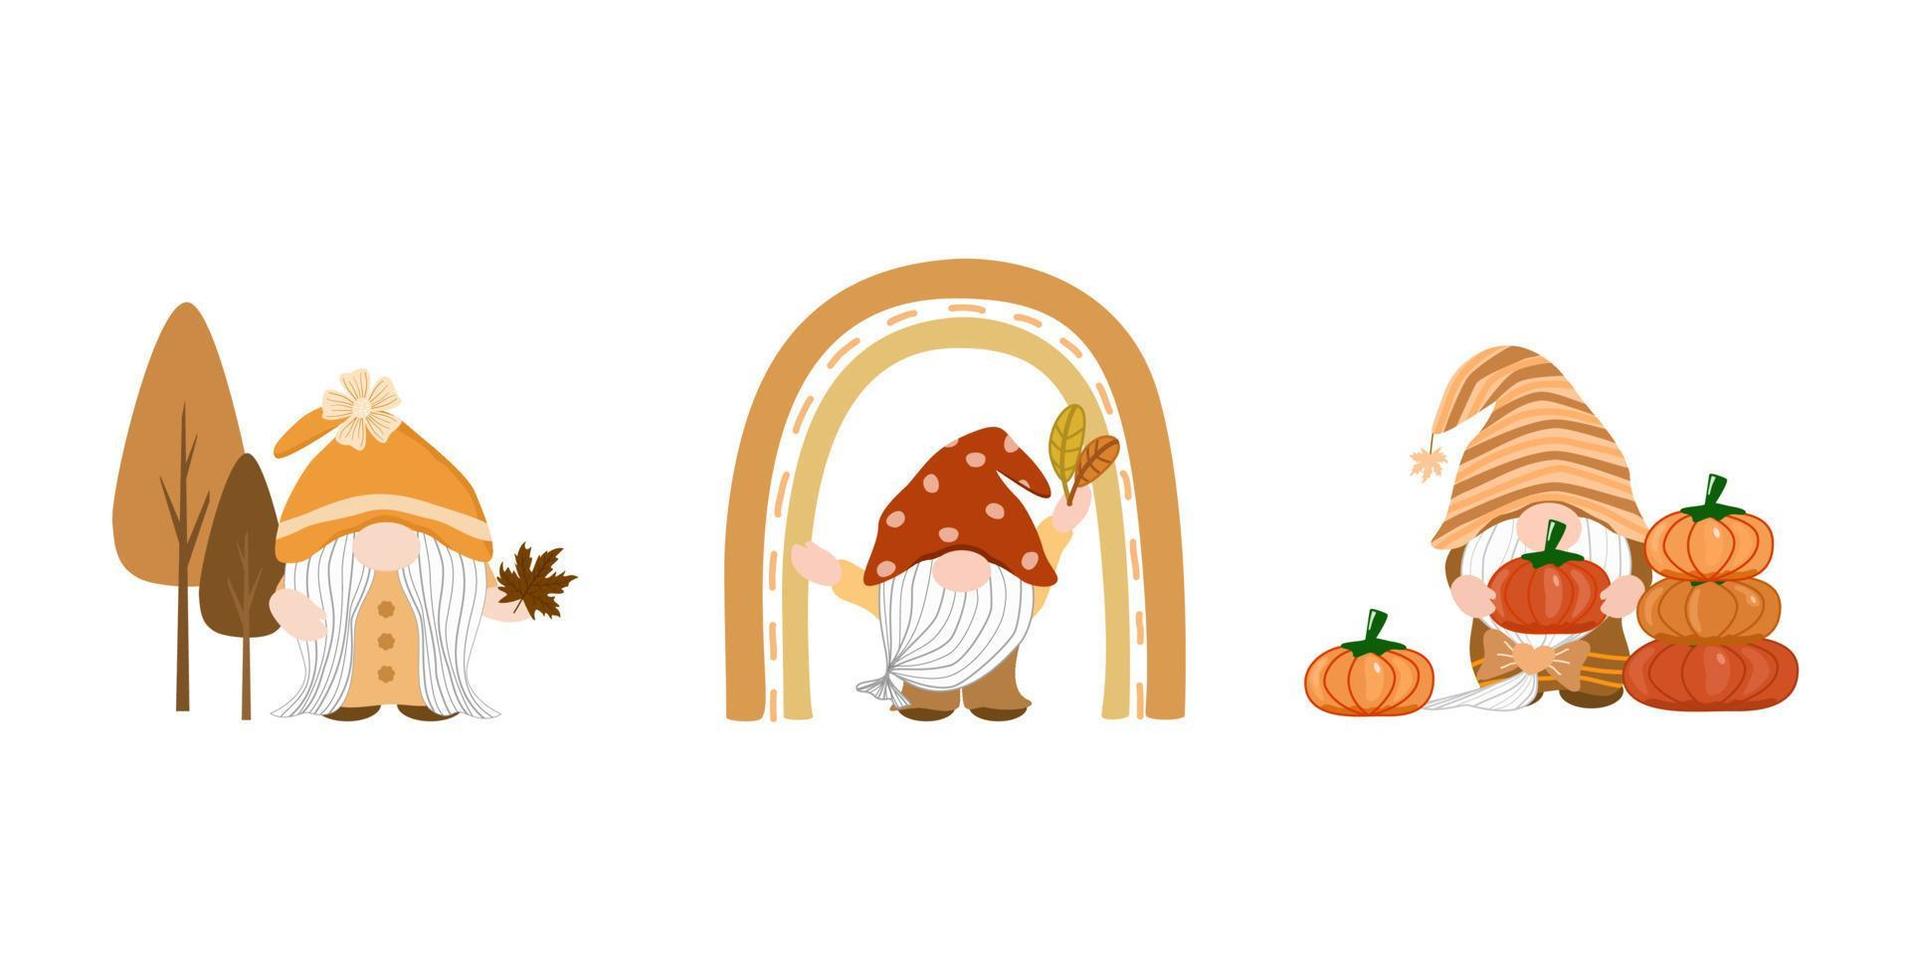 Vektor - niedlicher Satz Gnome, der Kürbis, Ahornblätter hält. Herbstsaison. kann verwendet werden, um jede Karte, Aufkleber, Druck, Web zu dekorieren.